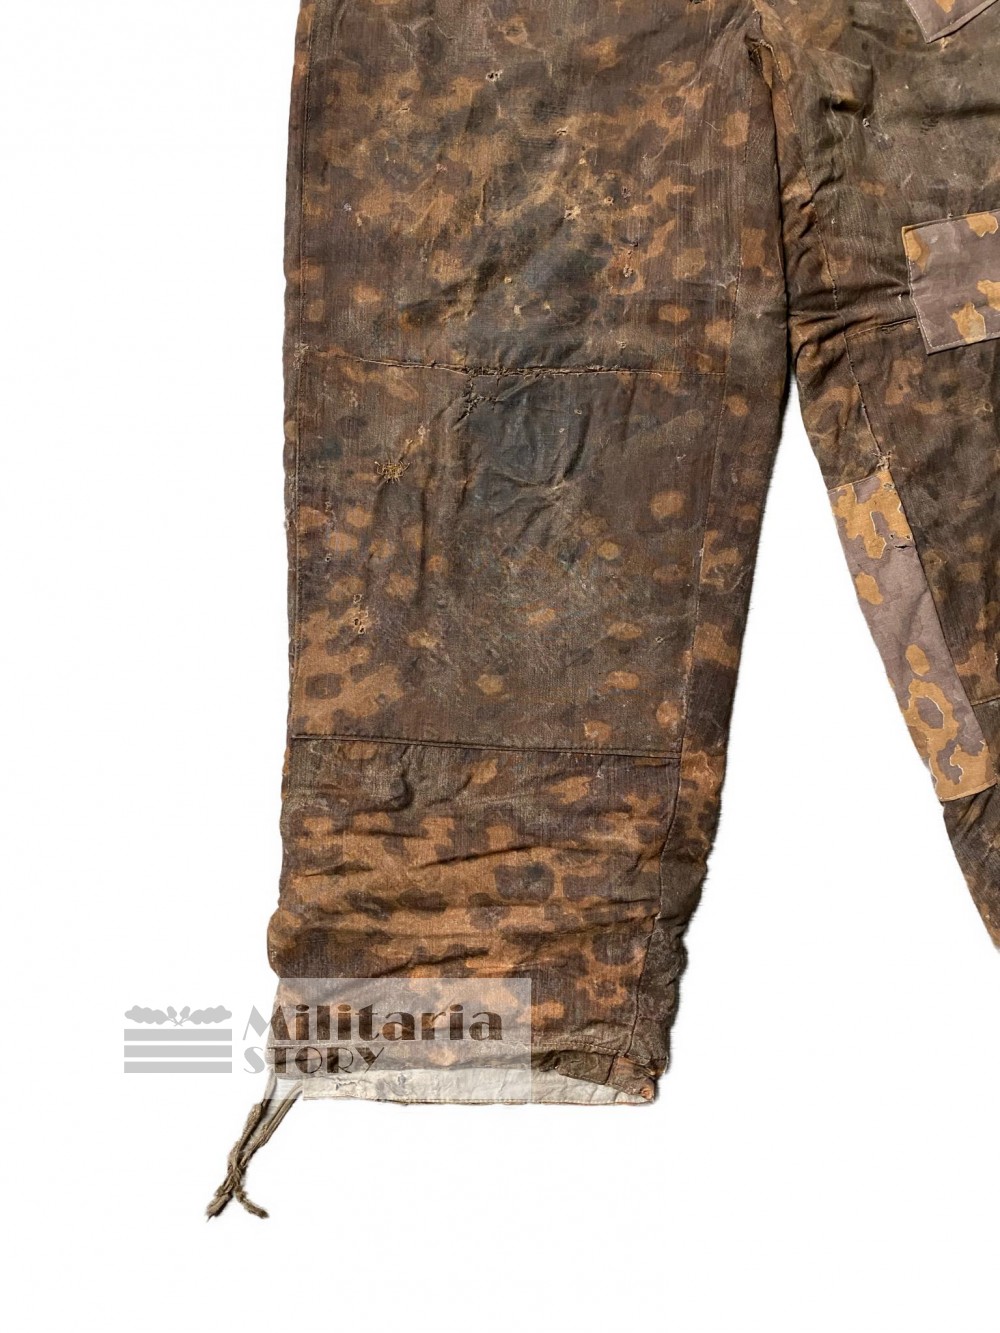 Waffen SS Autumn Oak Leaf trousers - Waffen SS Autumn Oak Leaf trousers: Third Reich Uniforms